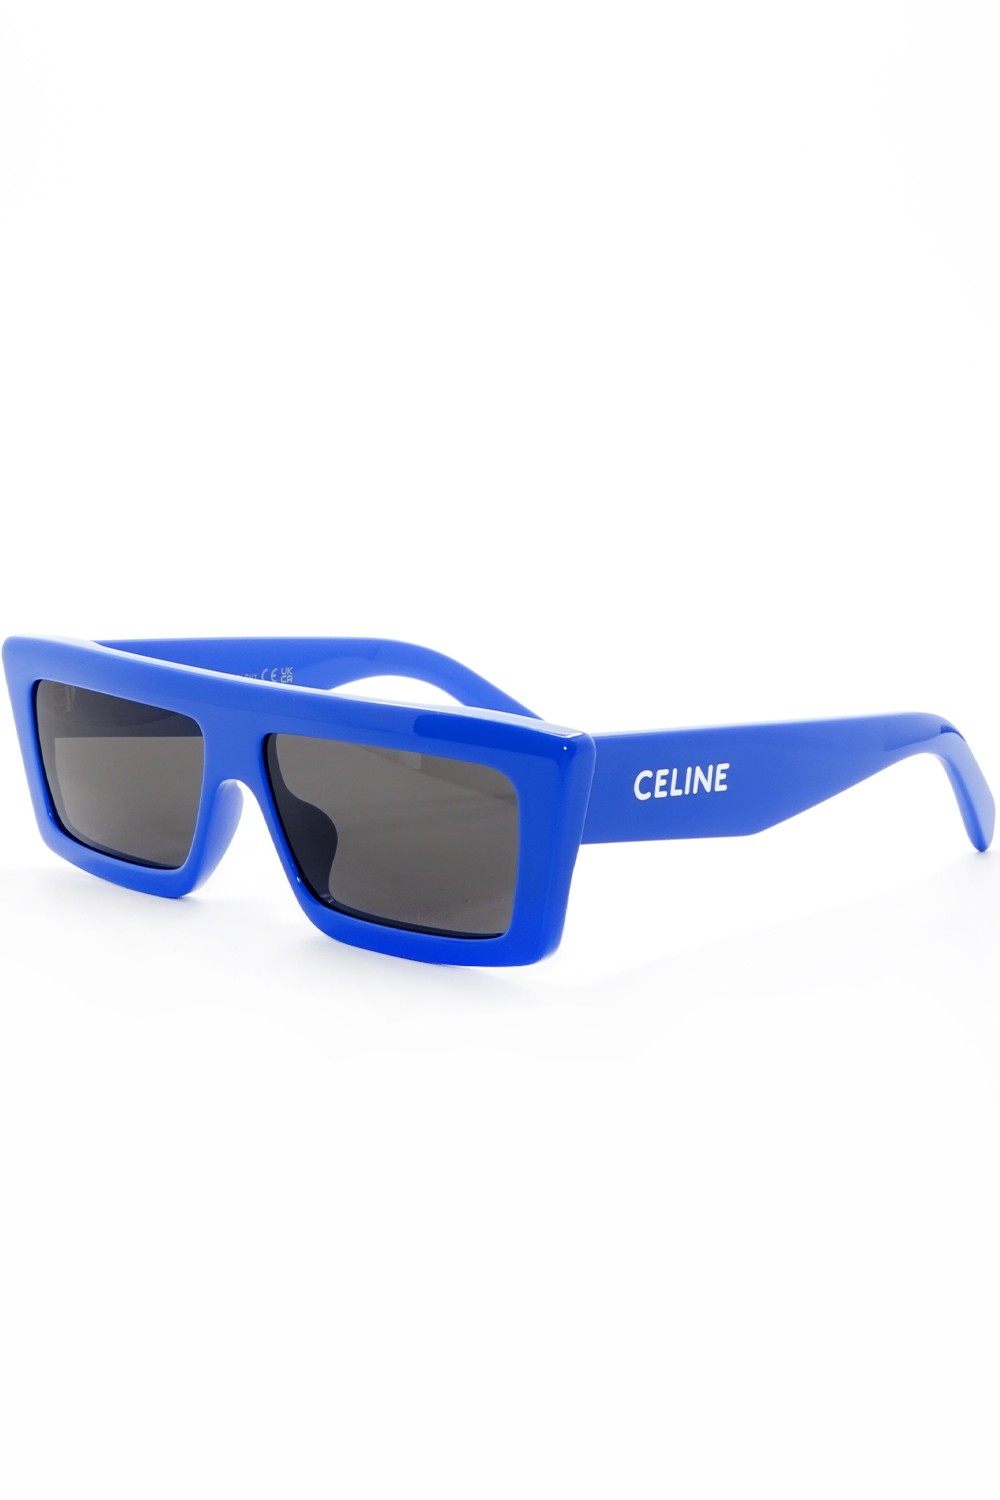 Celine - Occhiali da sole in celluloide rettangolari unisex blu - CL40214U 92A